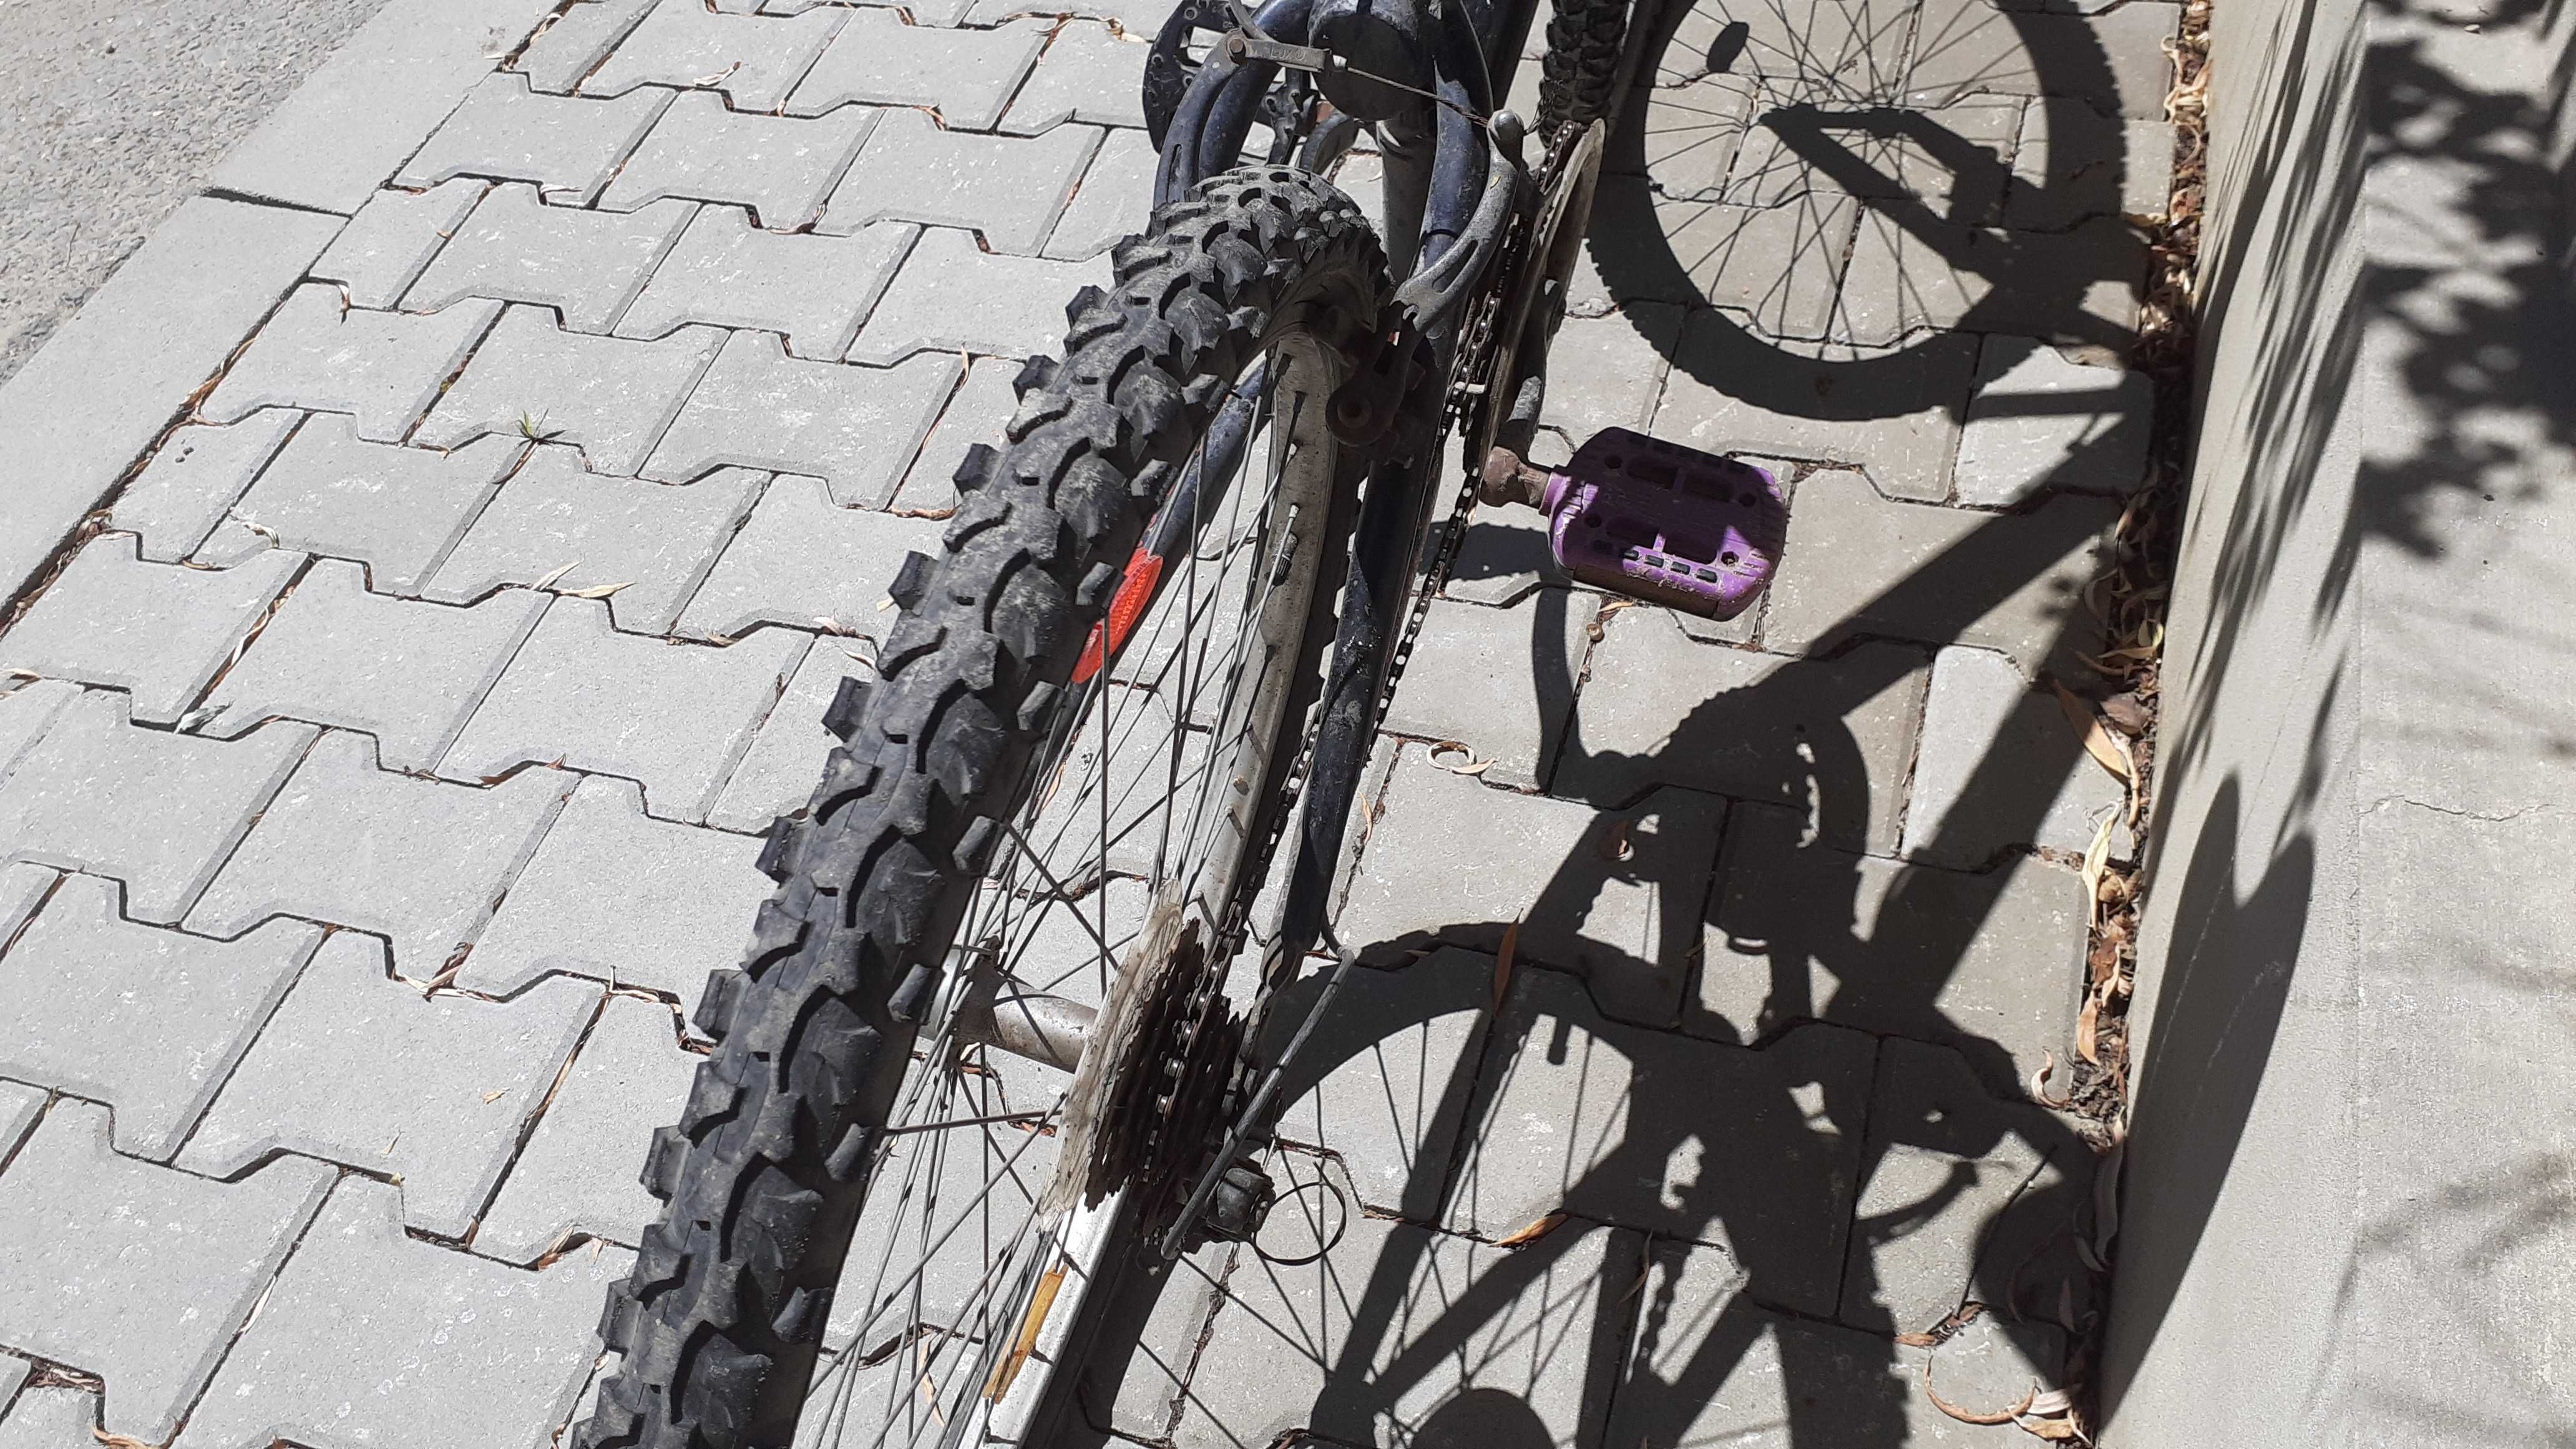 Vând Bicicleta ford bike bmx mtb în stare de bună funcționare